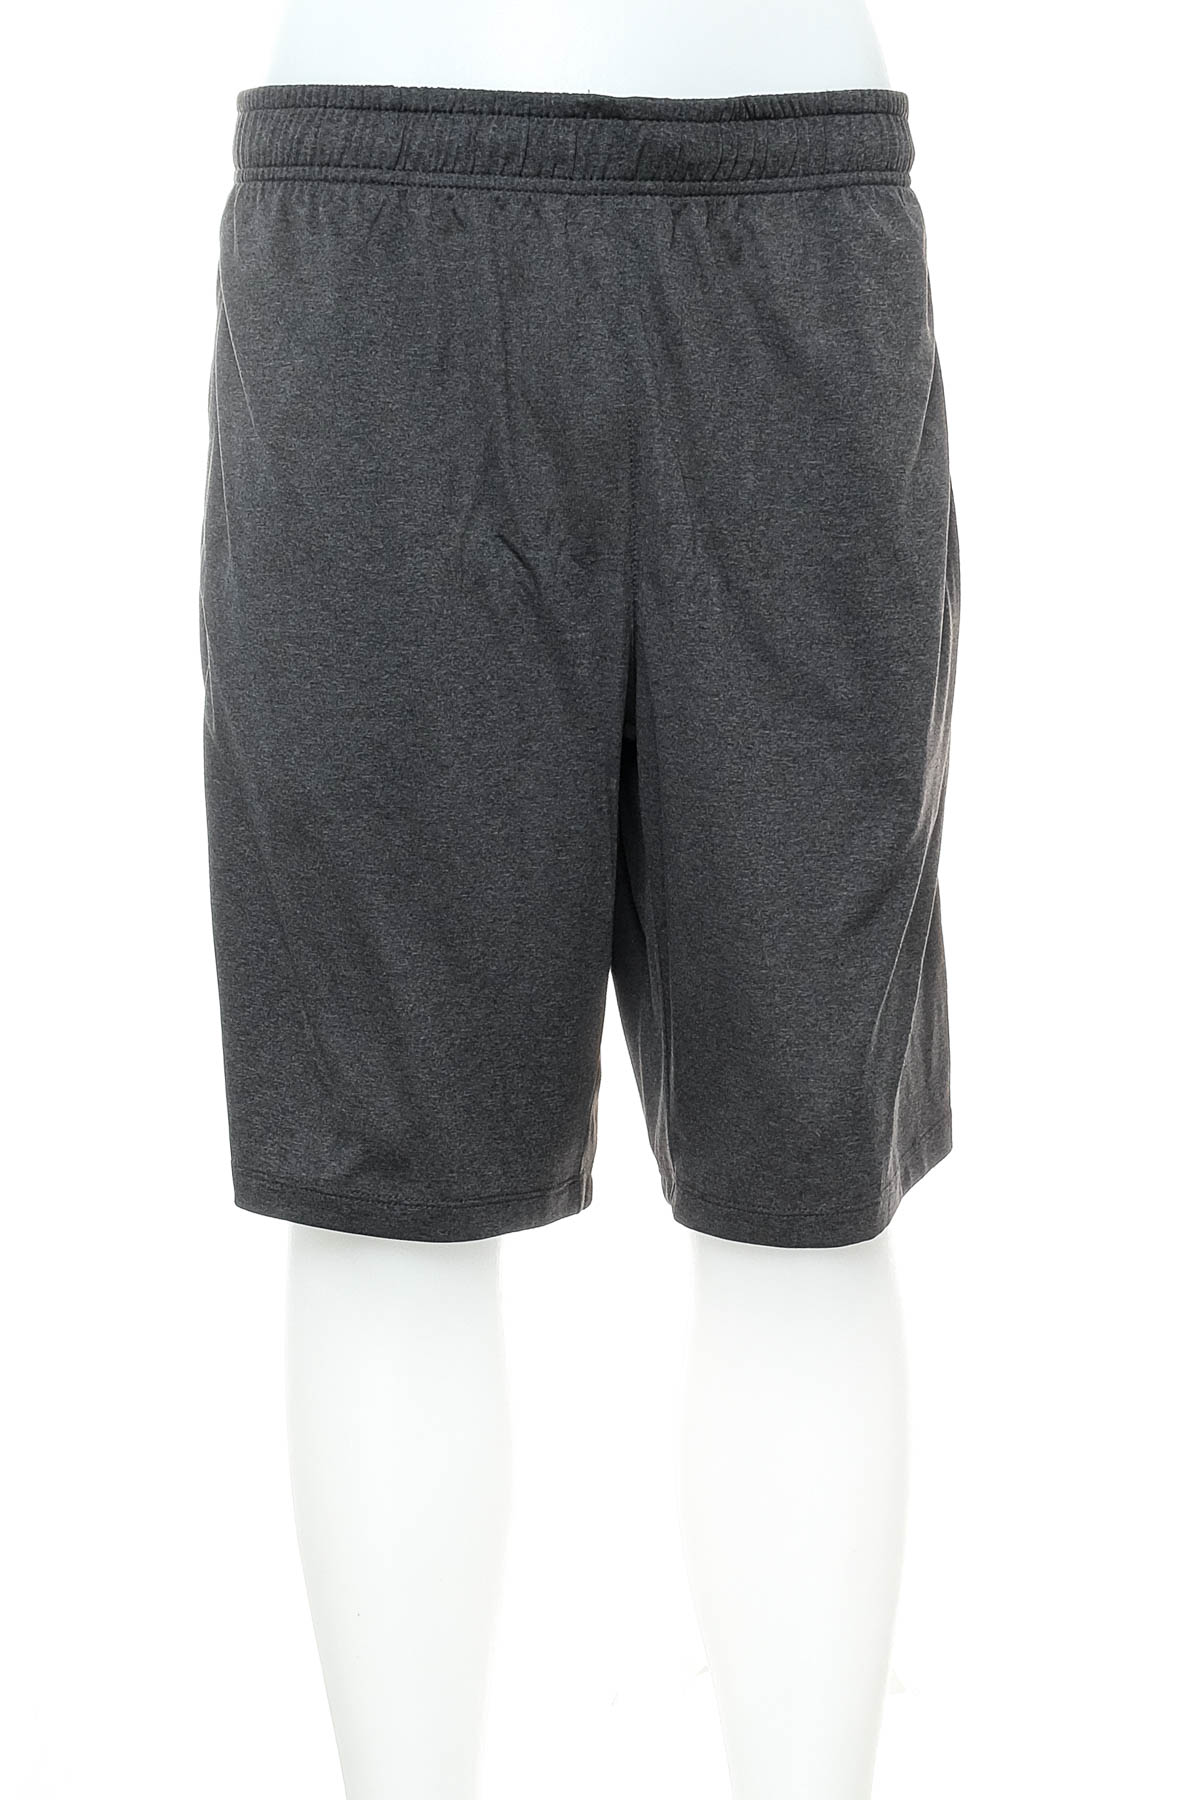 Men's shorts - Alex - 0